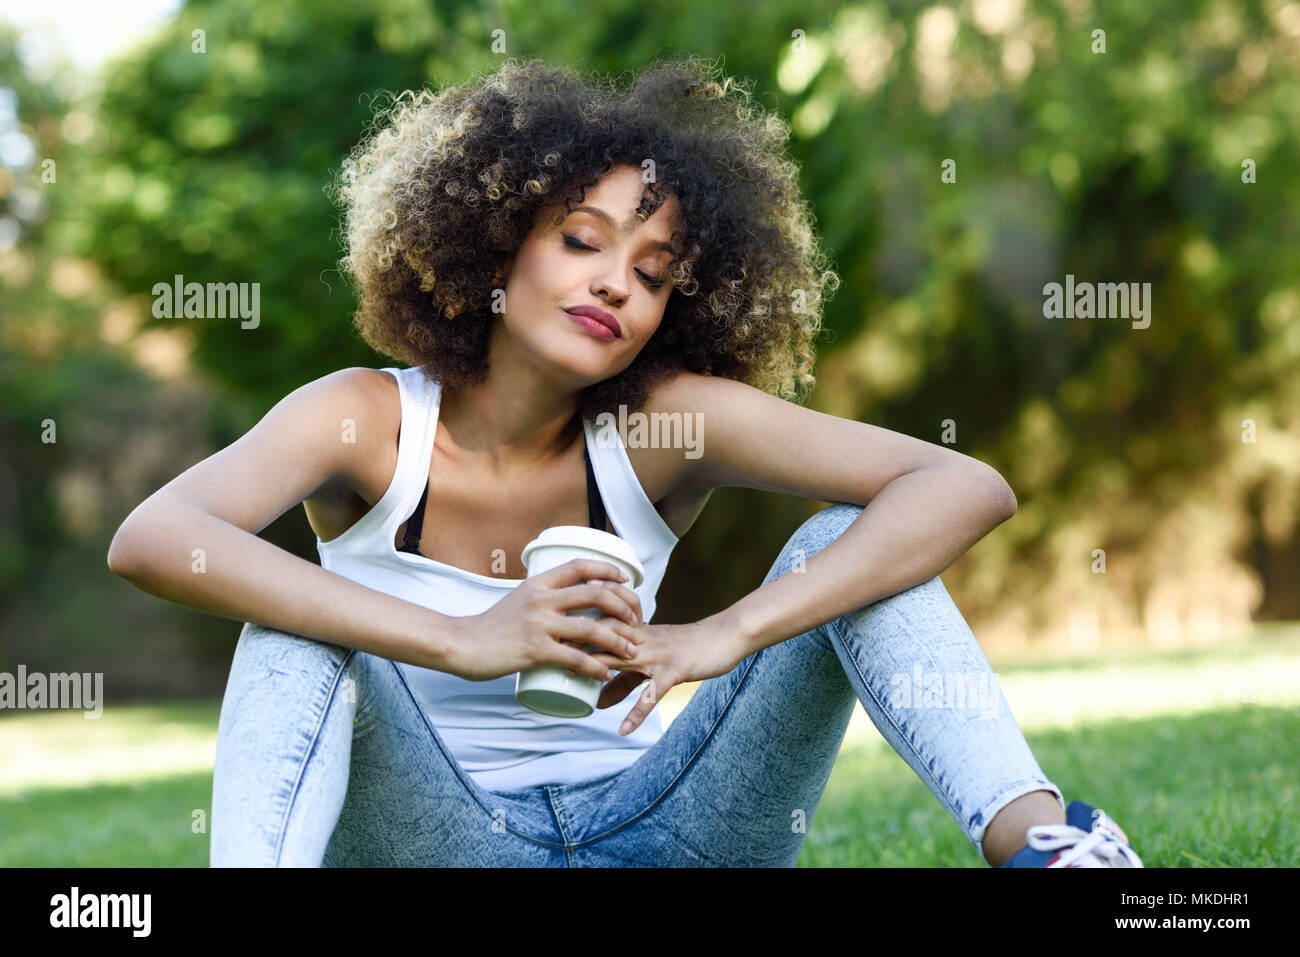 Schone Junge Afrikanische Amerikanische Frau Mit Afro Frisur Madchen Traumen Mit Geschlossenen Augen Mit Ein Glas Im Park Sitzen Auf Gras Tragen Kann Stockfotografie Alamy